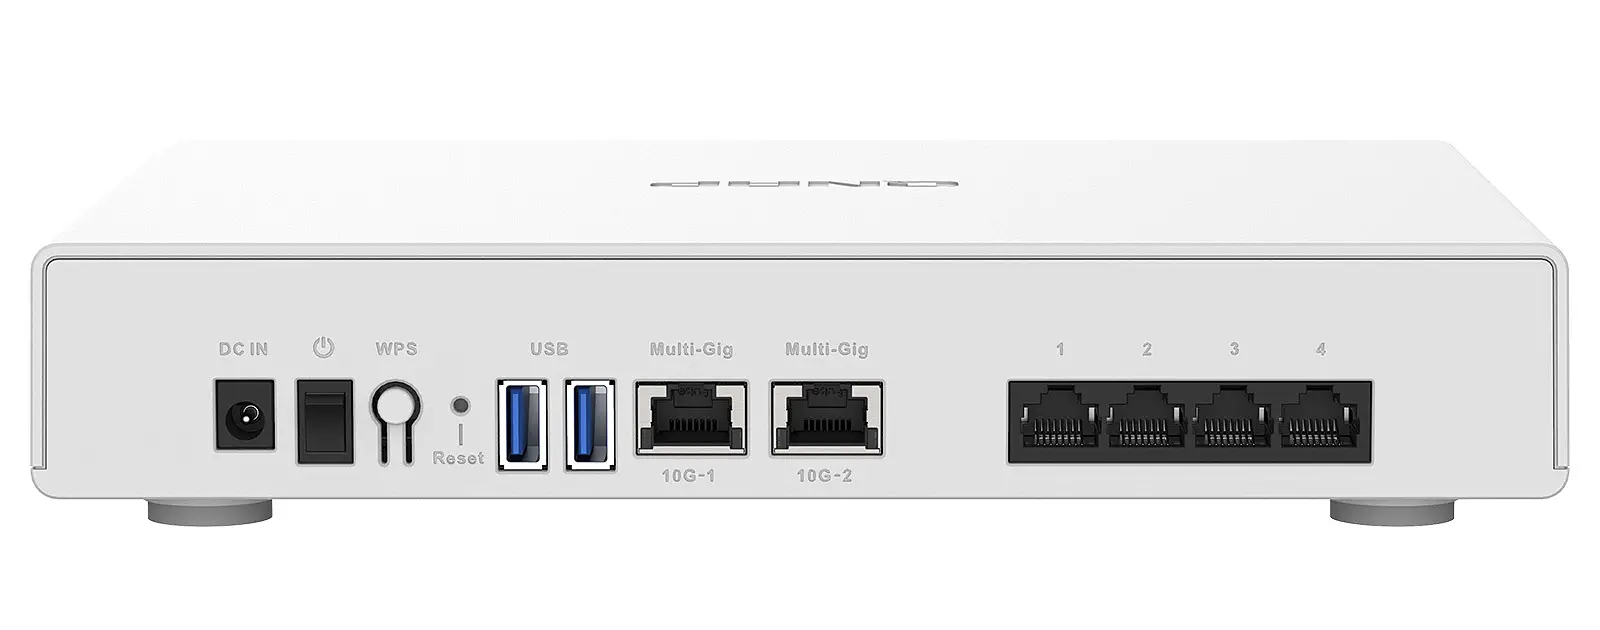 Der Qnap QHora-301W ist mit 6 Ethernet-Ports ausgestattet, davon 2 10GbE-Ports